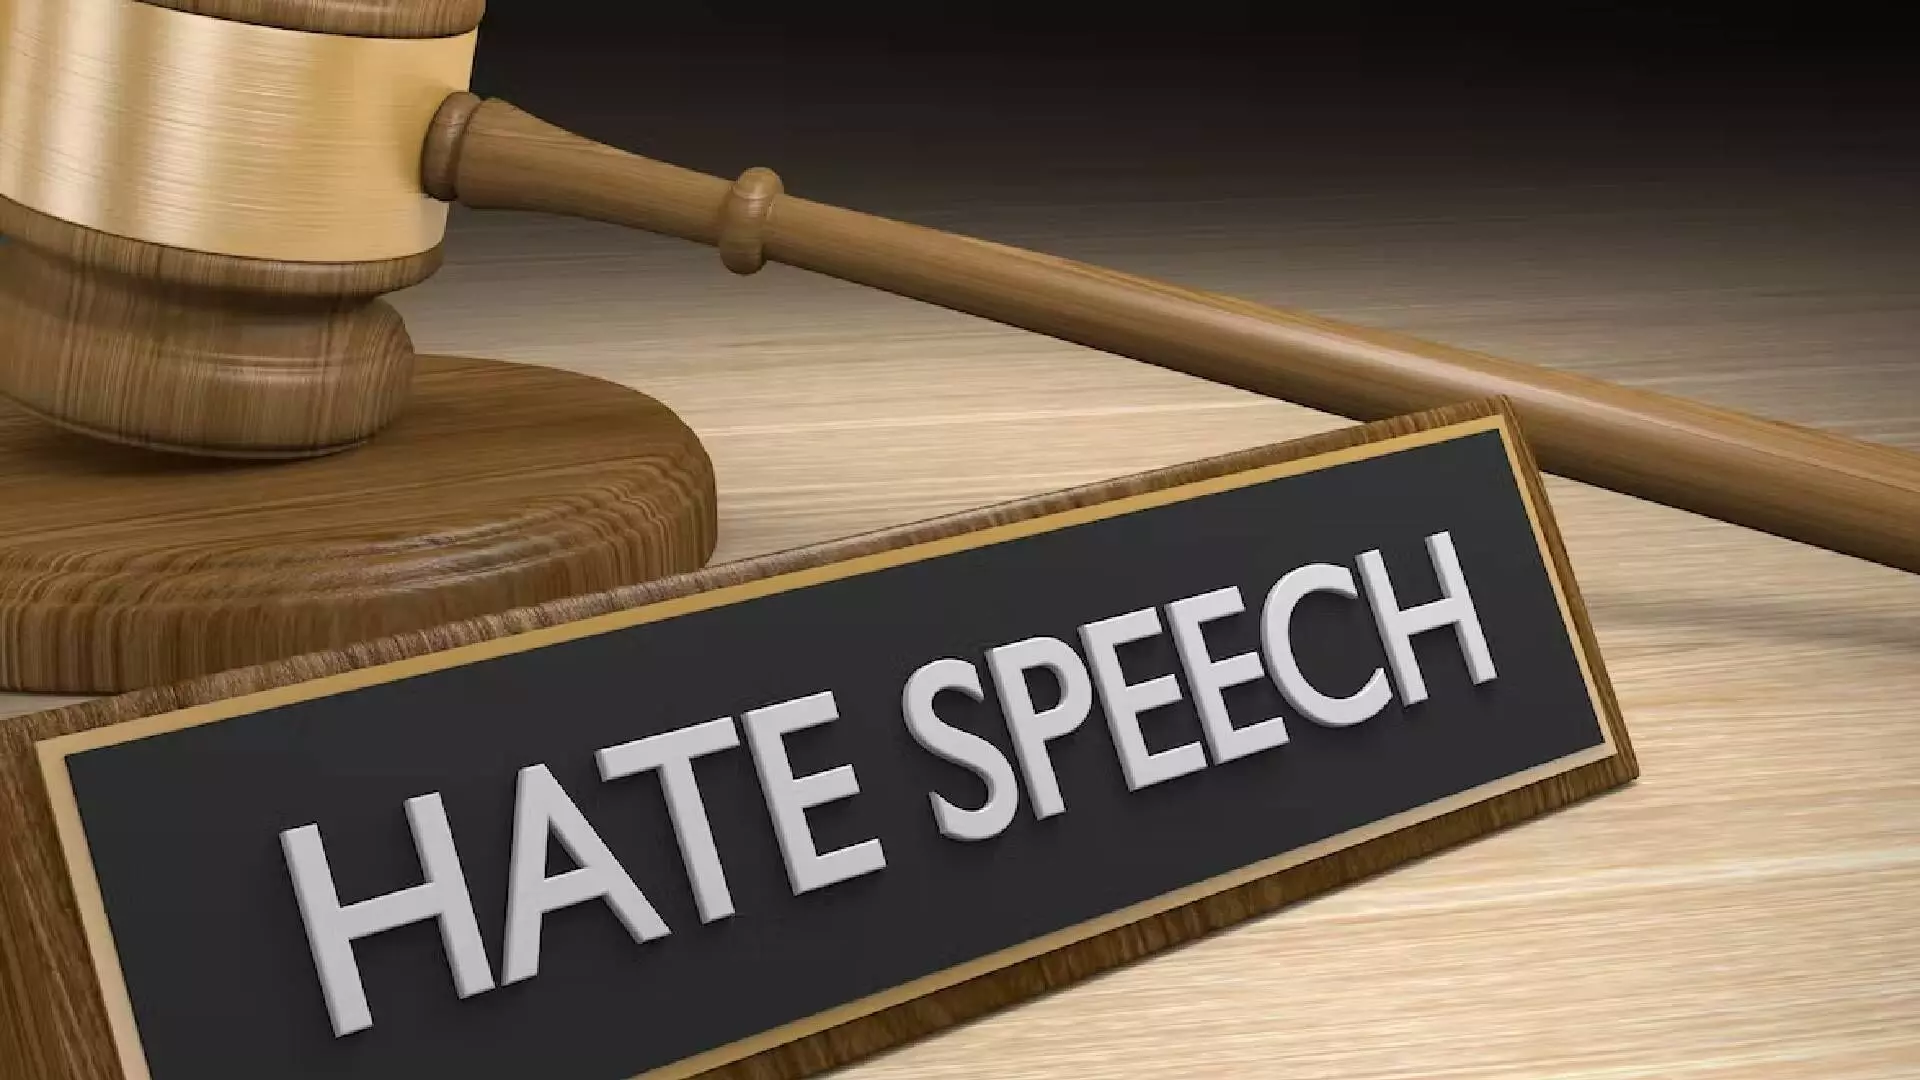 Hate Speech म्हणजे काय रे भाऊ?